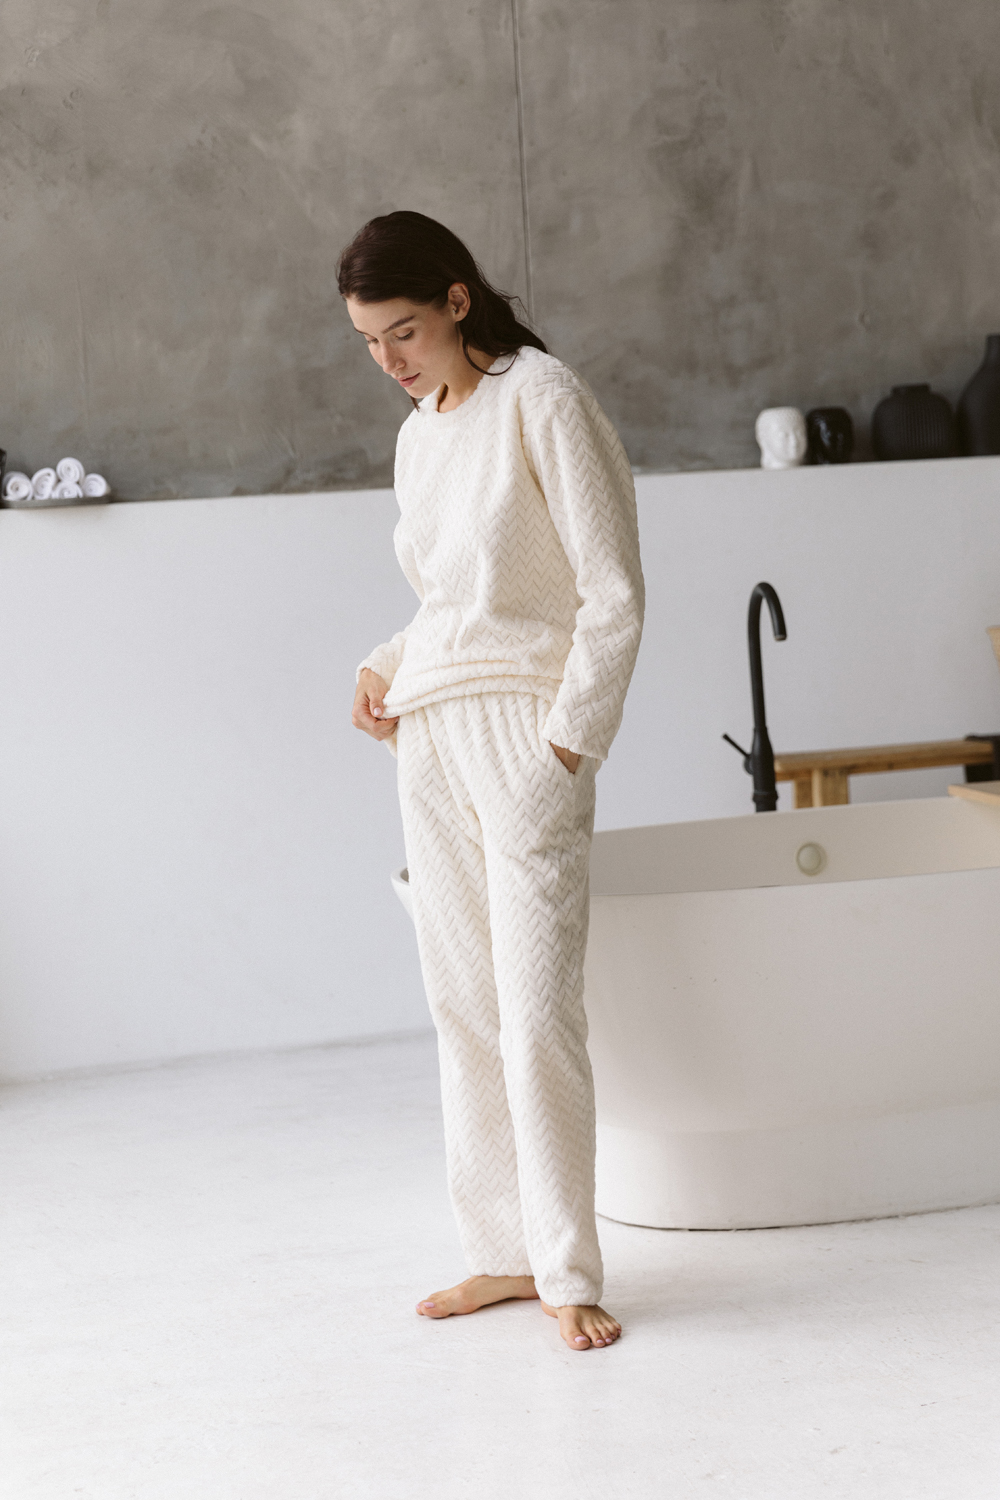 Warm pajamas in soft milky color